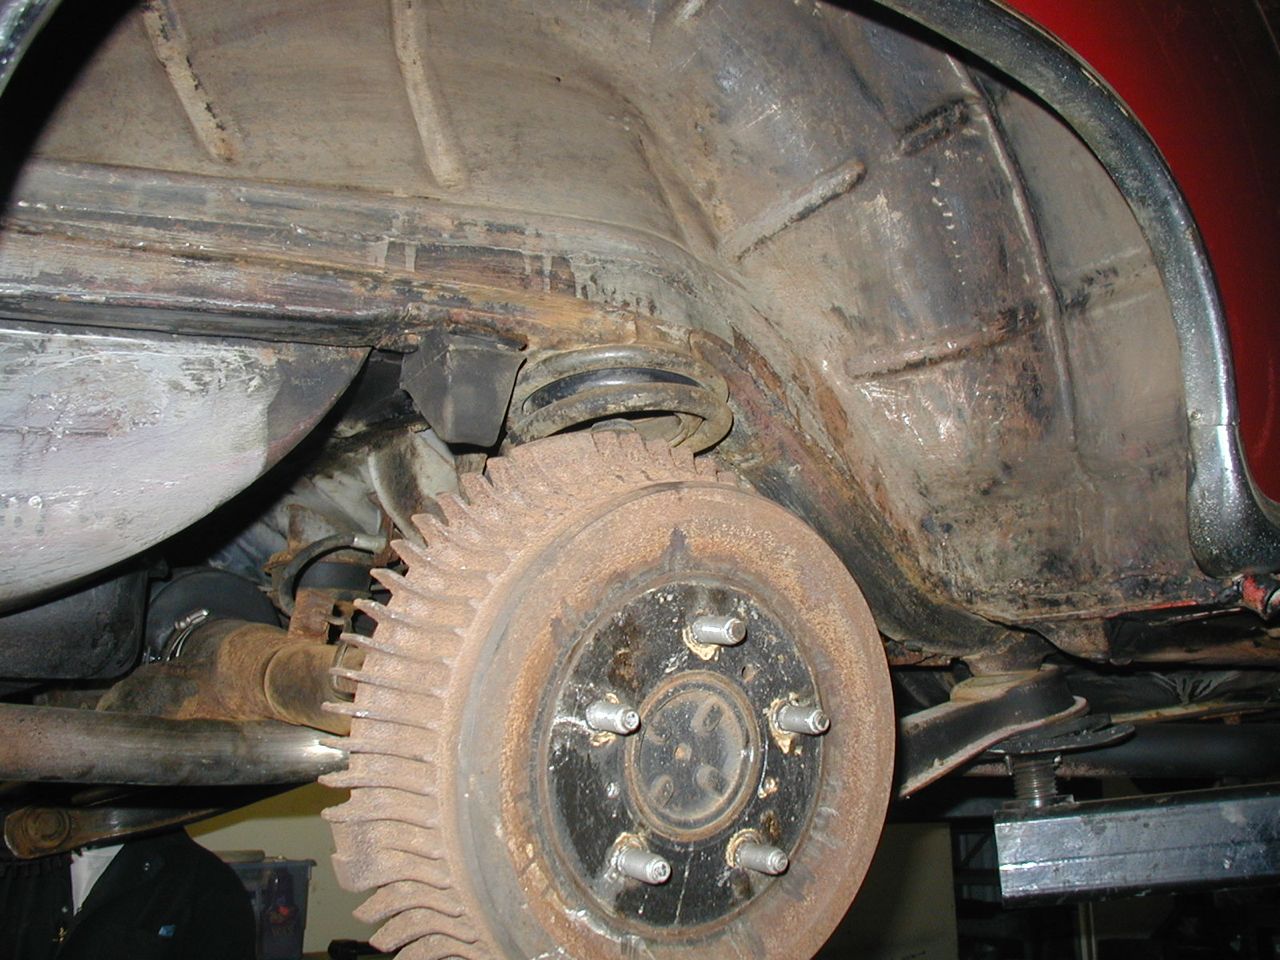 Rust repair on car фото 109